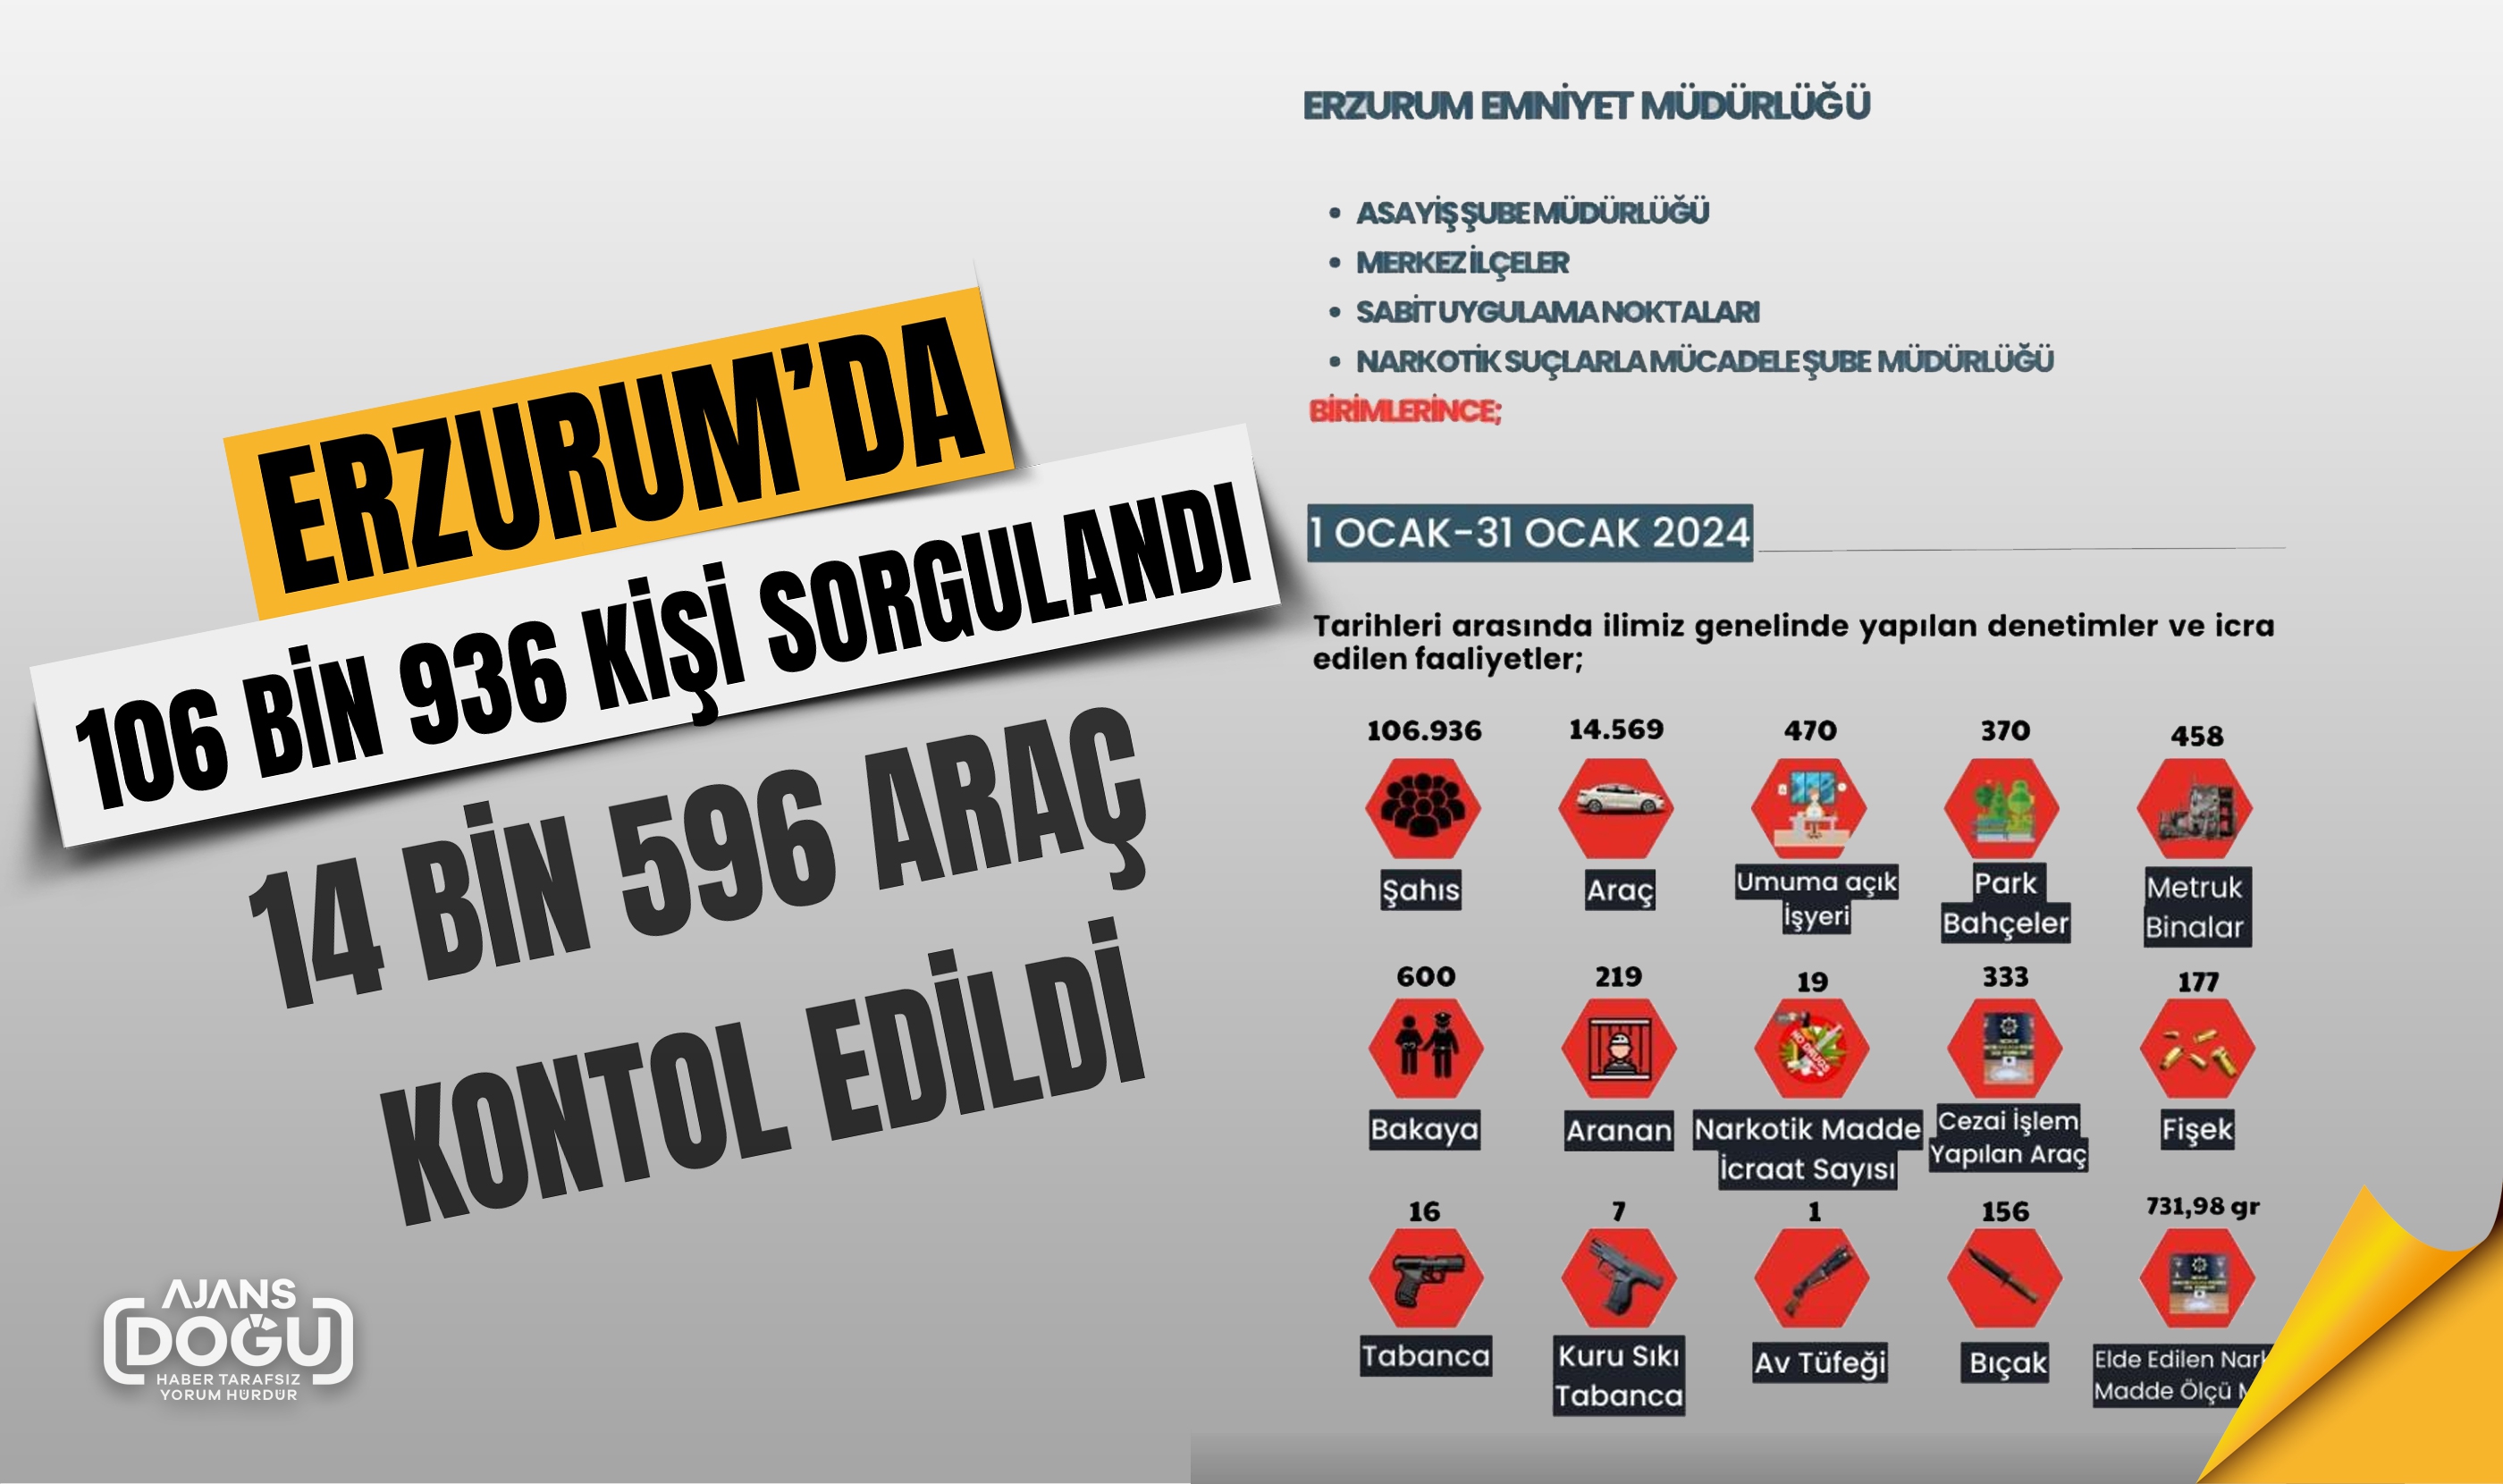 Erzurum’da 106 bin 936 kişi sorgulandı, 14 bin 596 araç kontol edildi